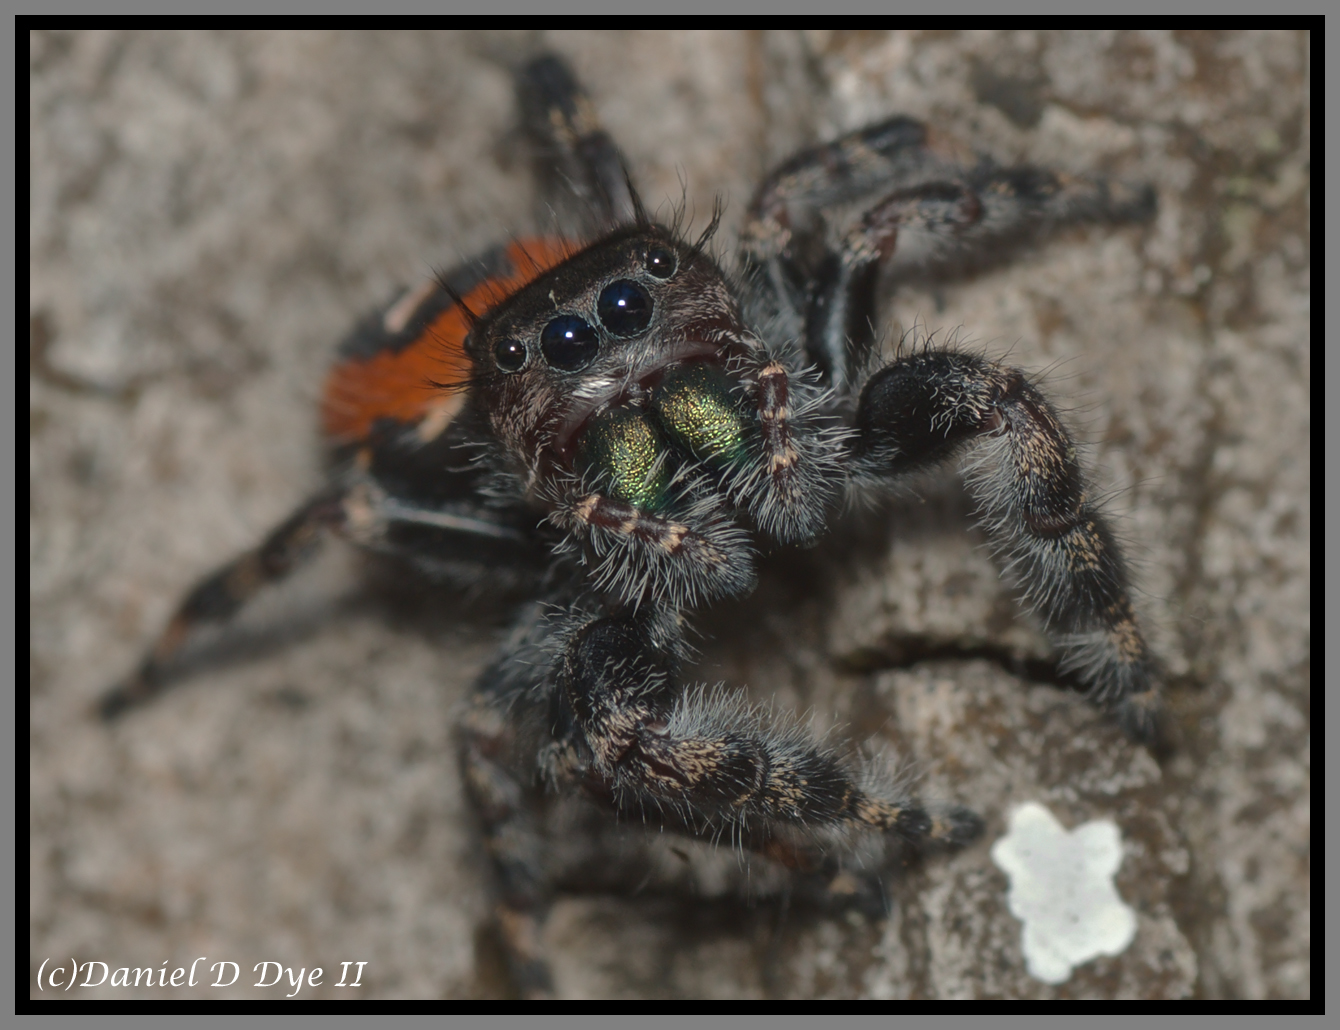 Jumping Spider (Phidippus pulcherrimus)